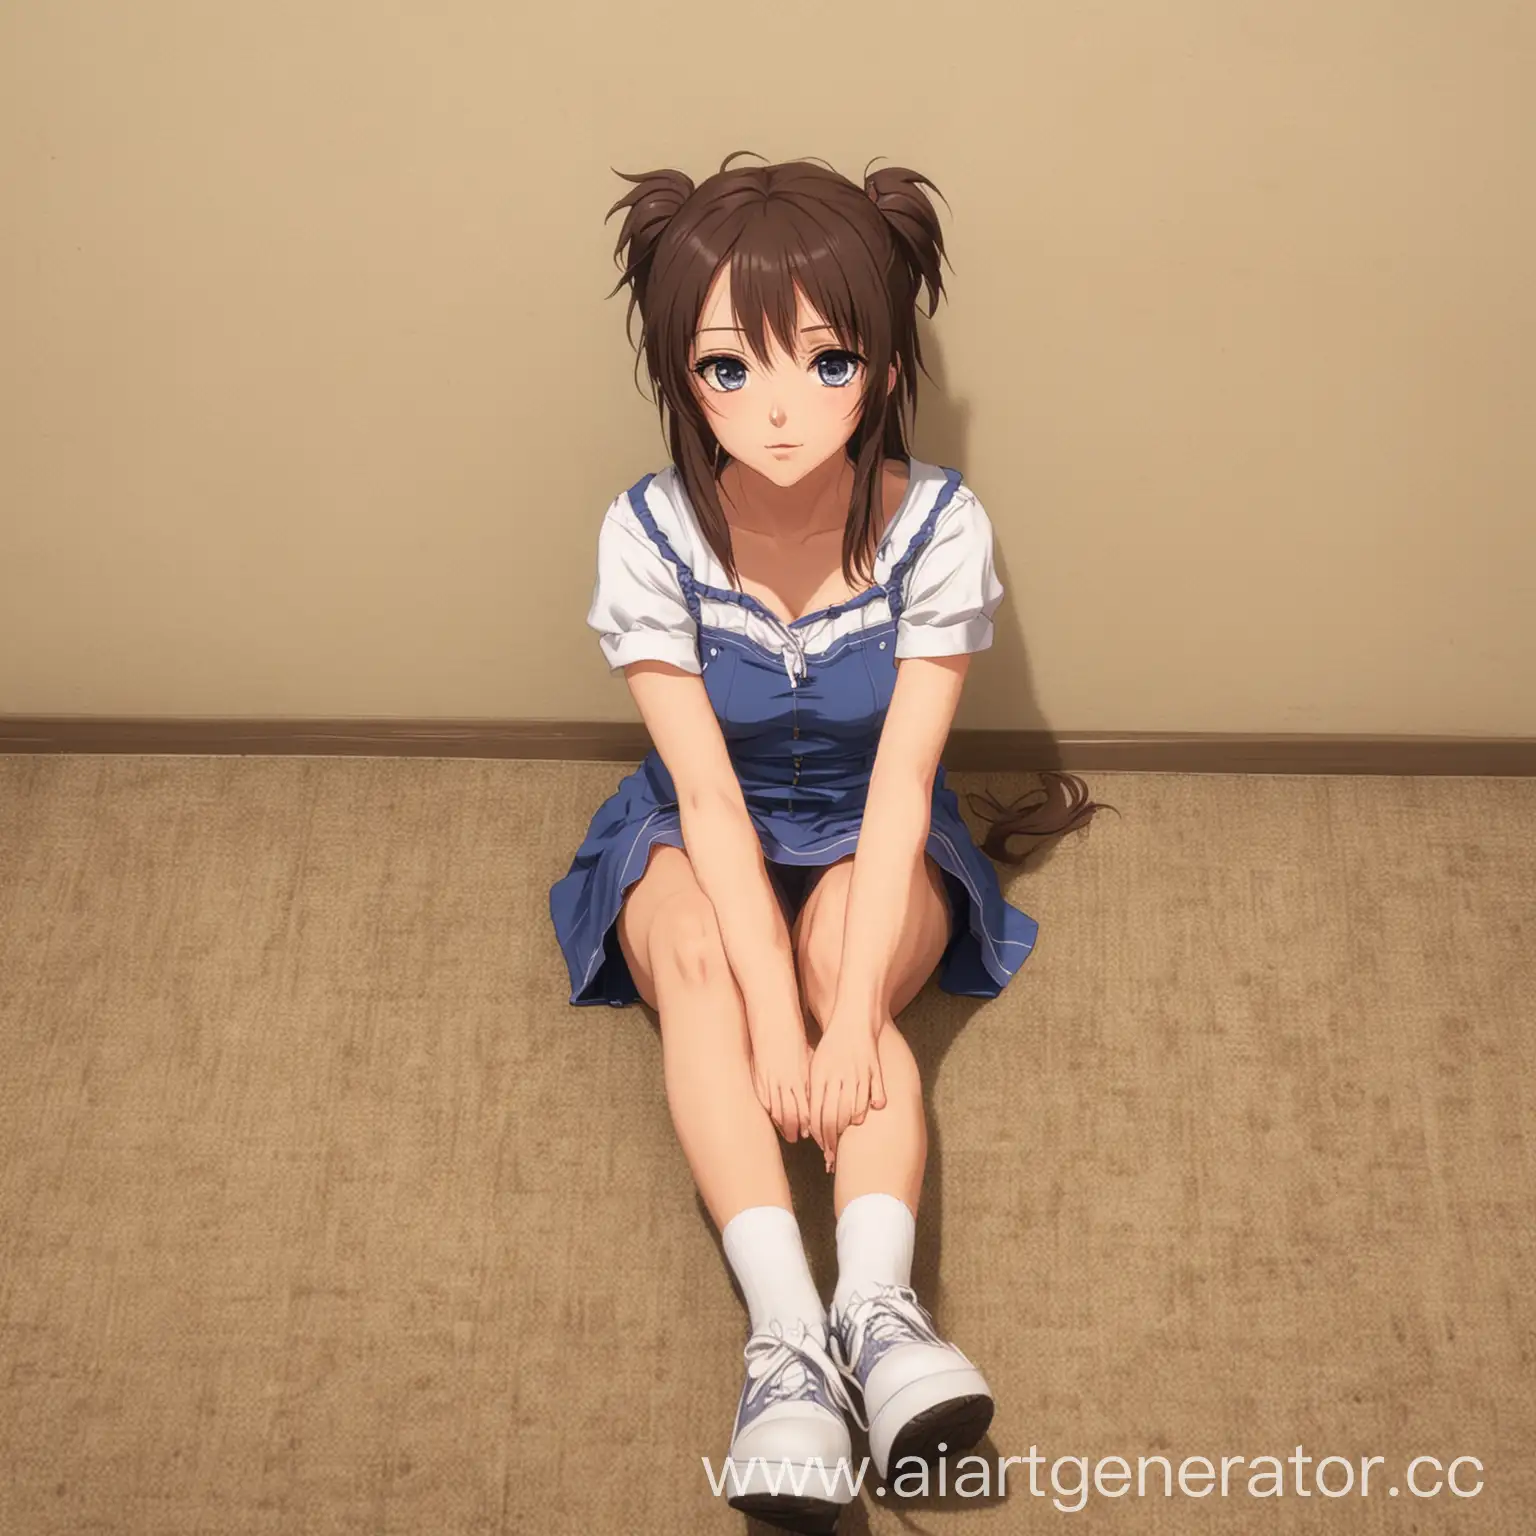 Tranquil-Anime-Girl-Sitting-on-Floor-in-Full-Length-Pose